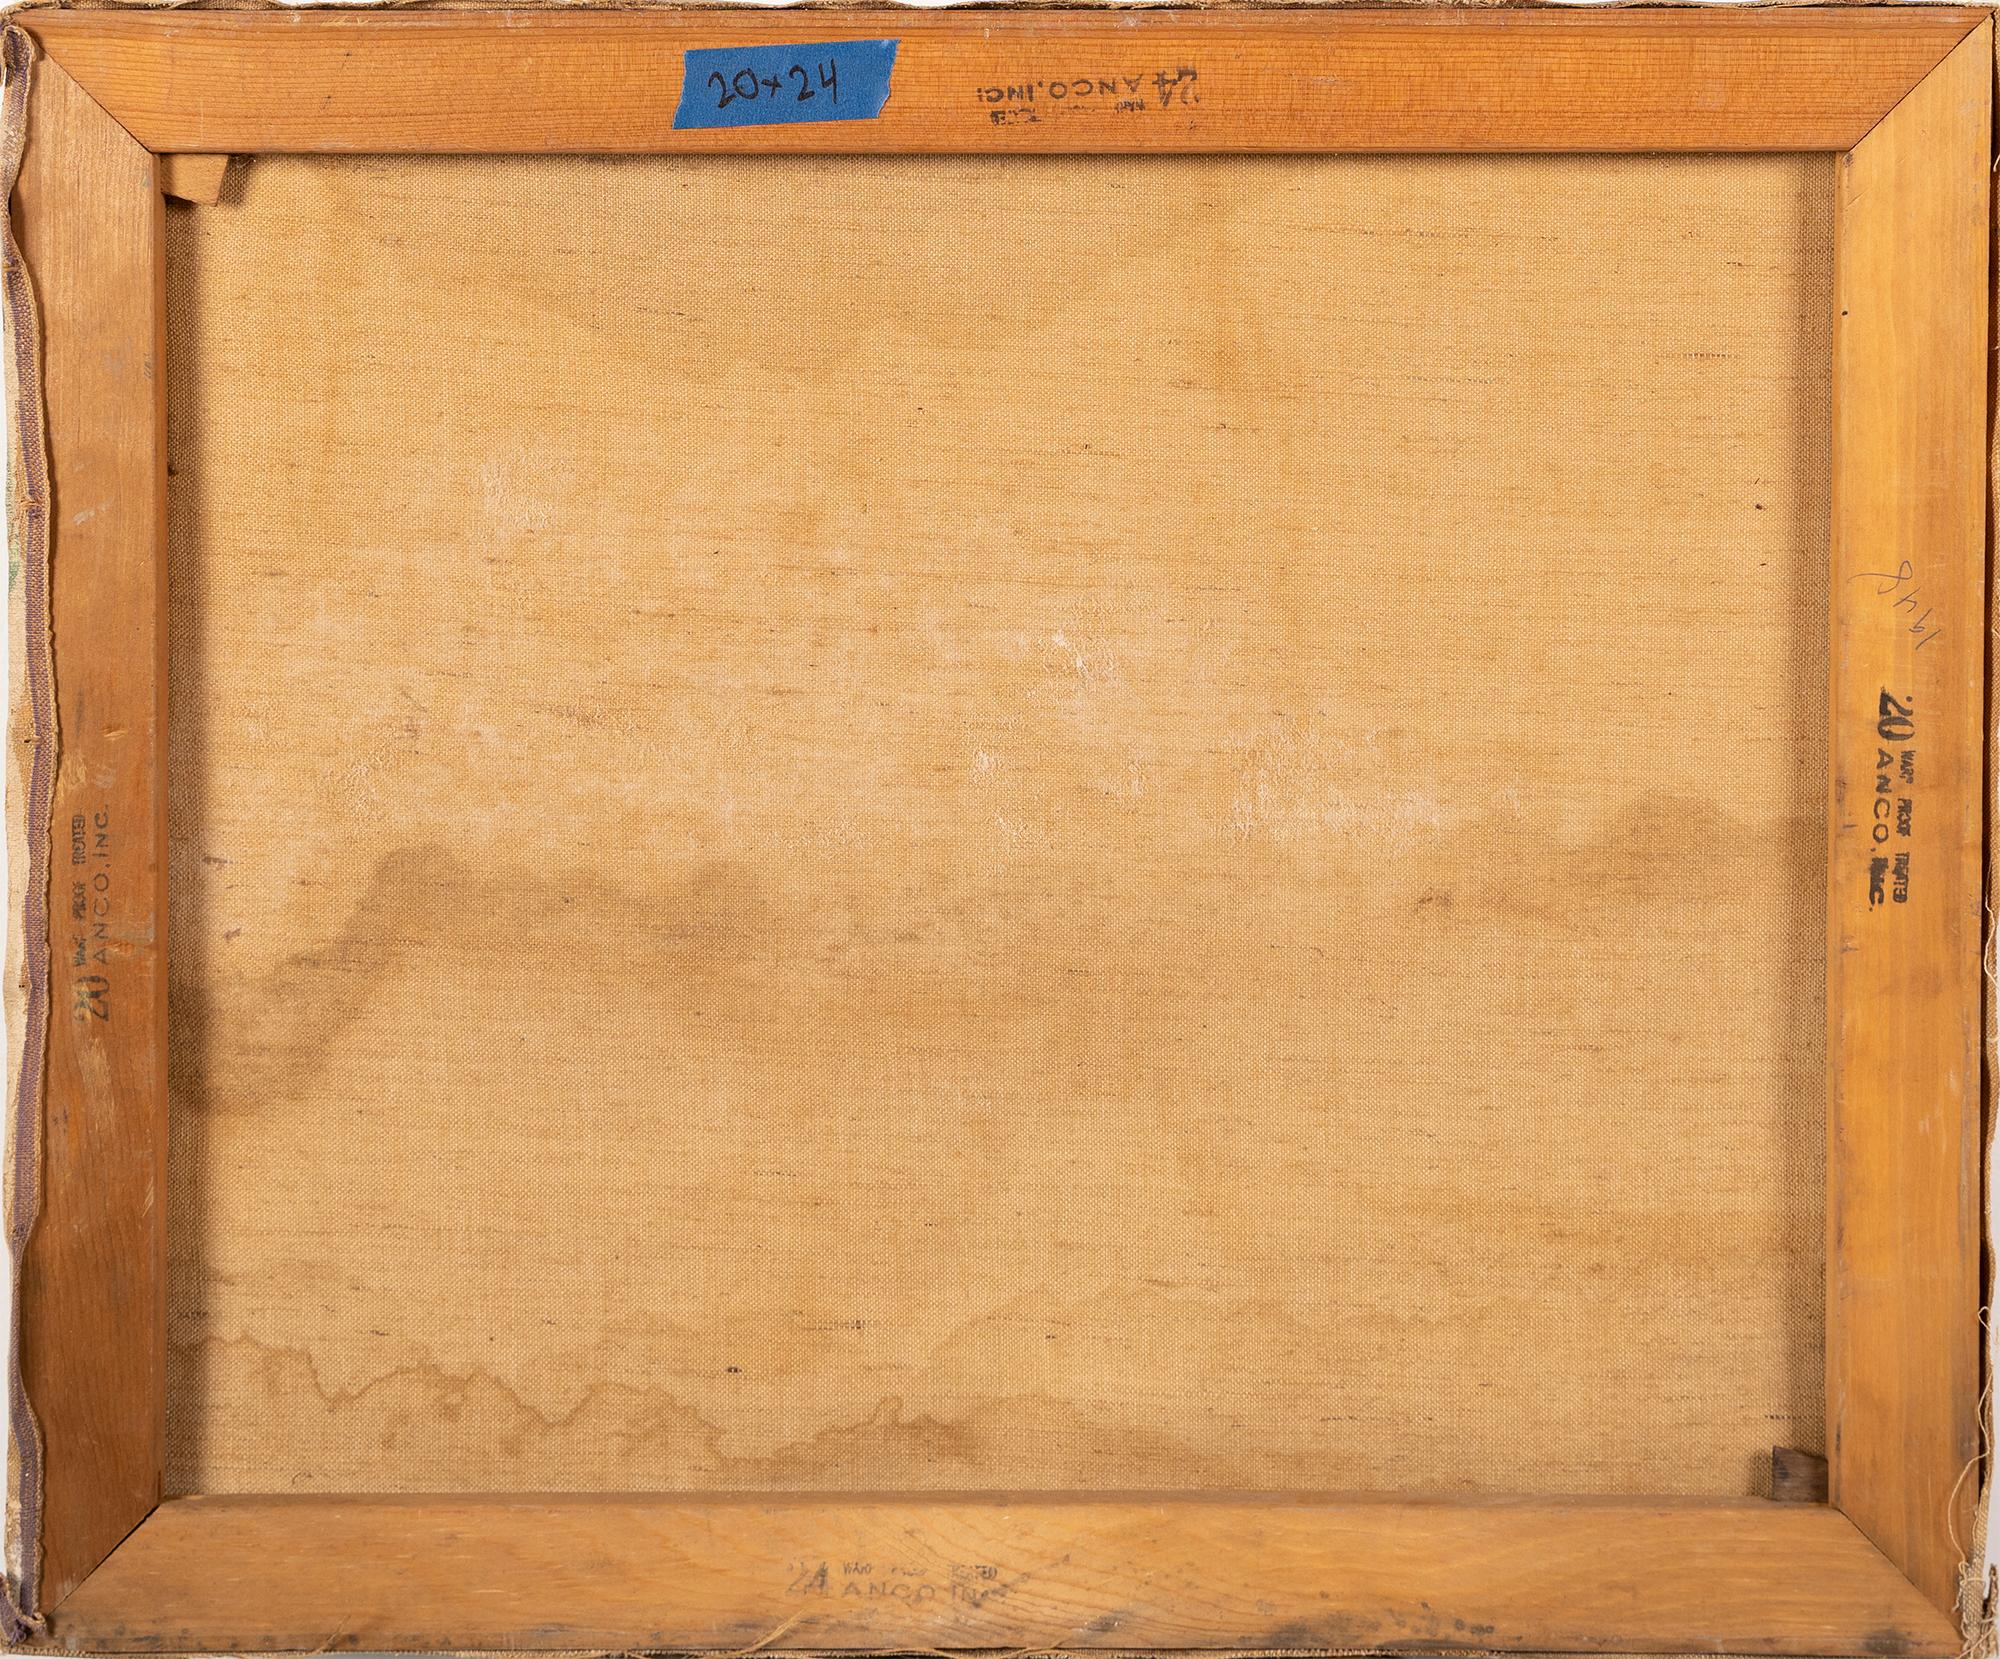 Antike amerikanische abstrakte kubistische Tischplatte Stillleben Ölgemälde.  Öl auf Leinwand, um 1930.  Keine Signatur gefunden.  Bildgröße: 20L x 16H.  Einrahmung verfügbar. 